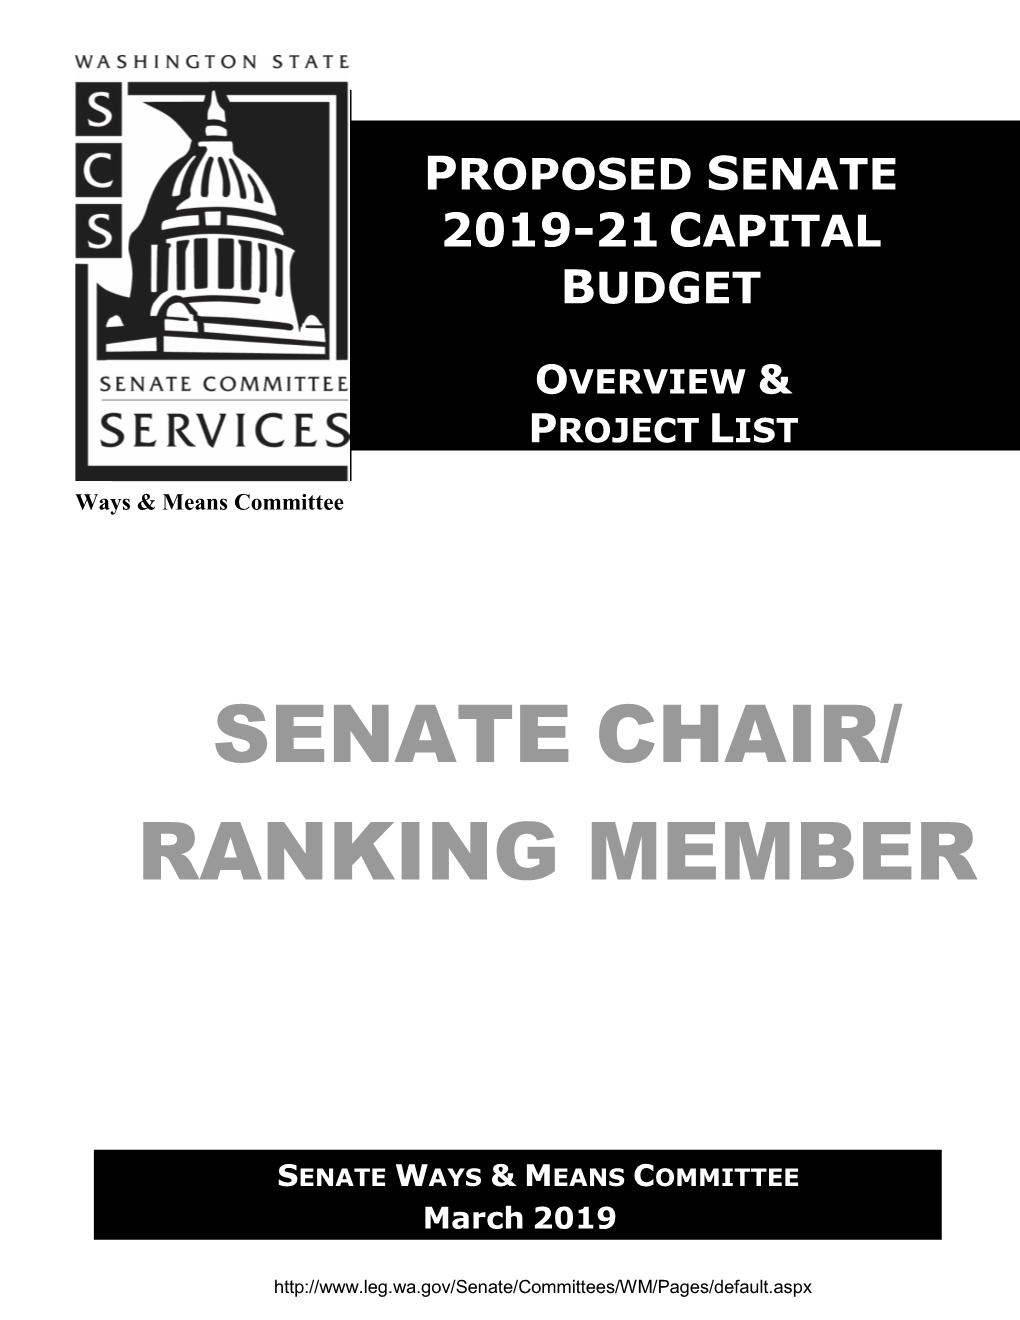 Senate Chair/ Ranking Member